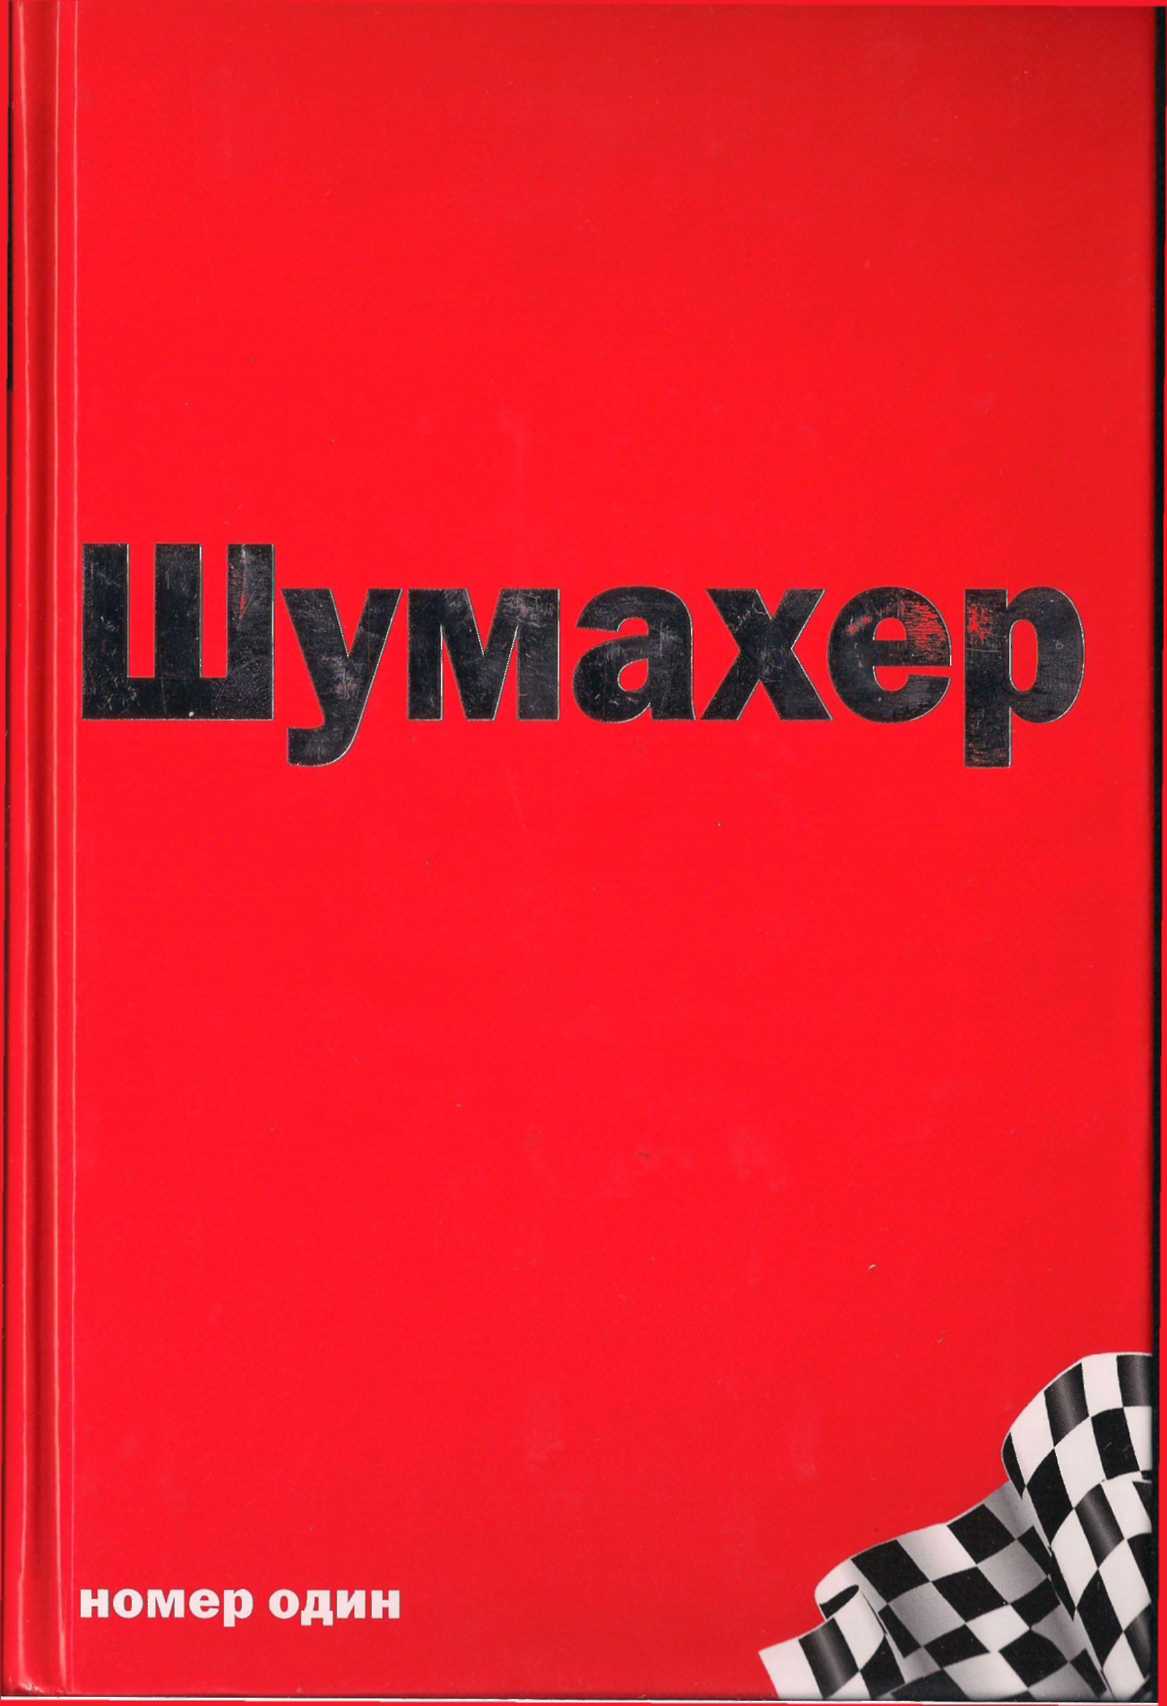 Баян ширянов все книги скачать бесплатно